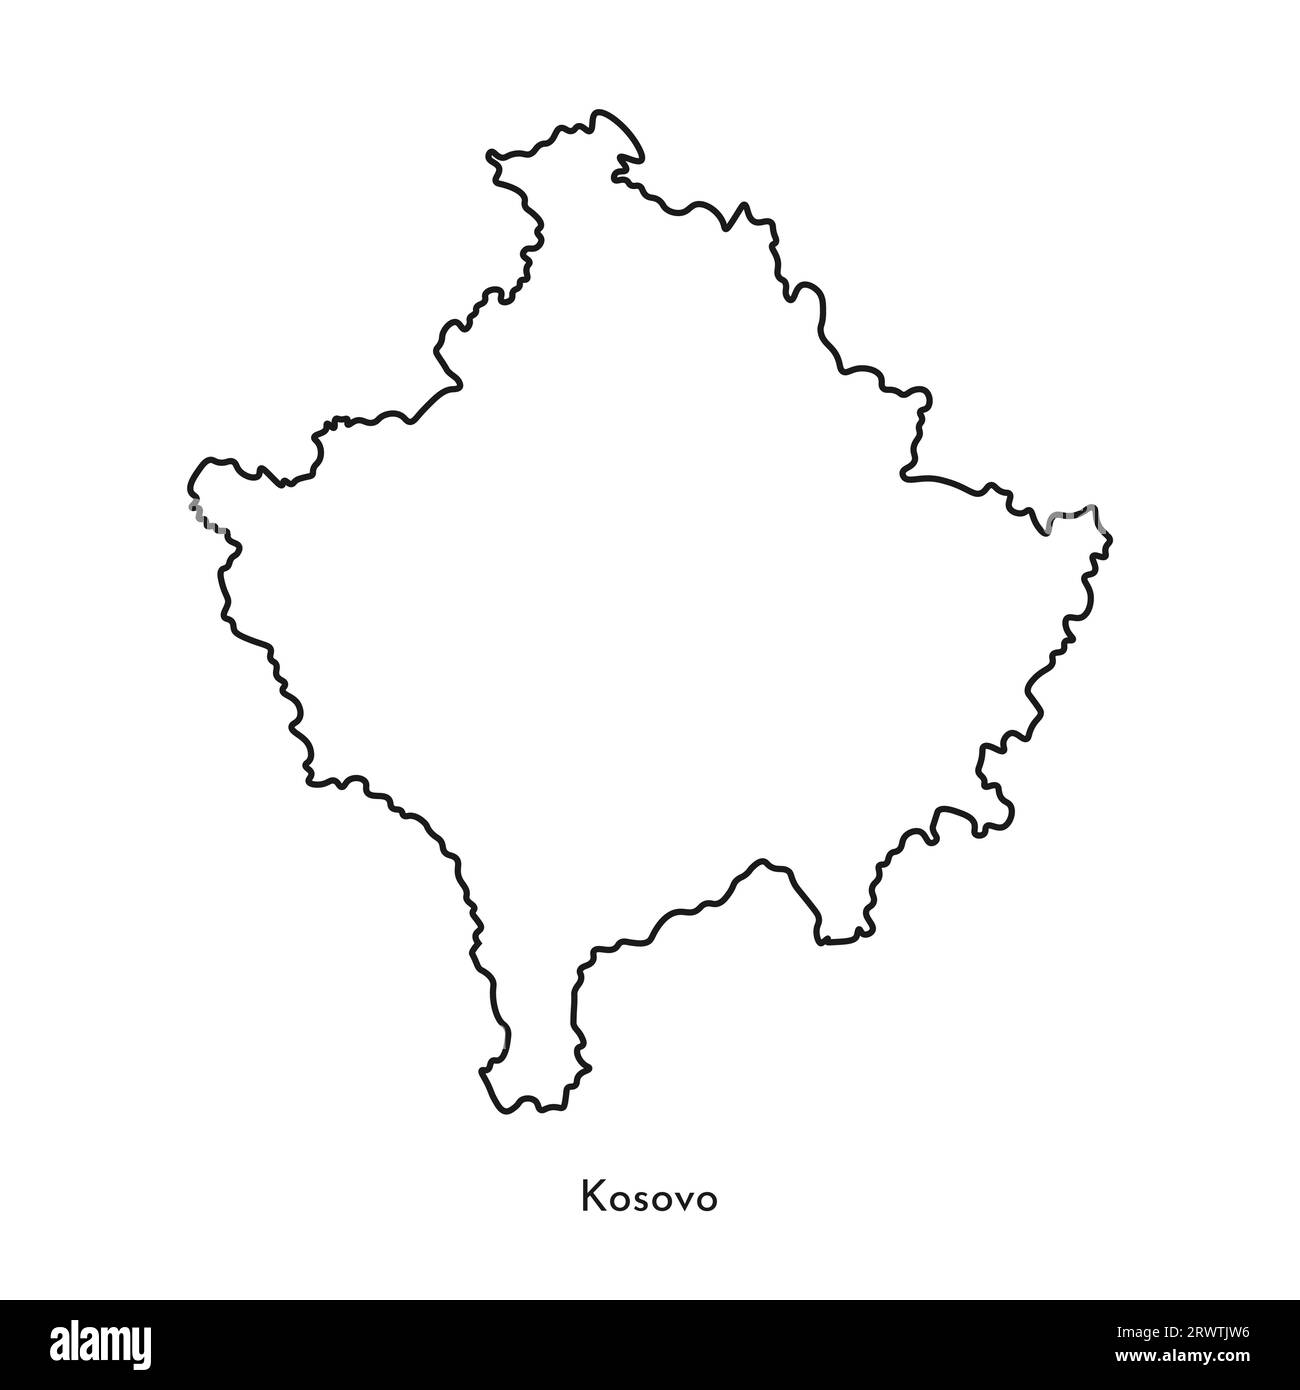 Icône d'illustration simplifiée isolée de vecteur avec silhouette de ligne noire de la carte du Kosovo. Fond blanc. Illustration de Vecteur